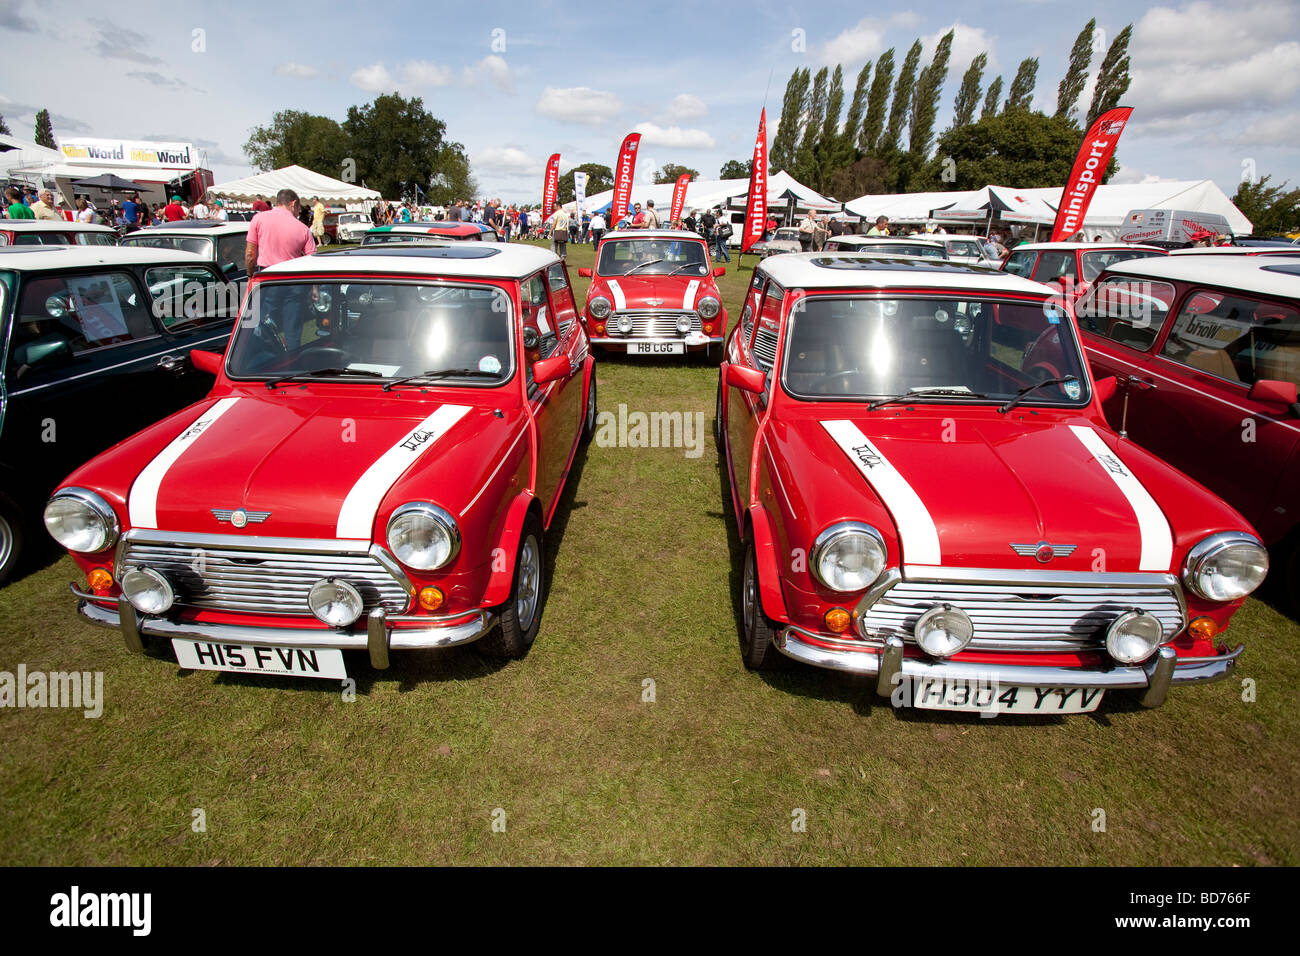 Une rangée de Mini Cooper voitures de rallye à l'occasion du 50e anniversaire de la naissance du marquage Mini, Birmingham, Angleterre, RU Banque D'Images